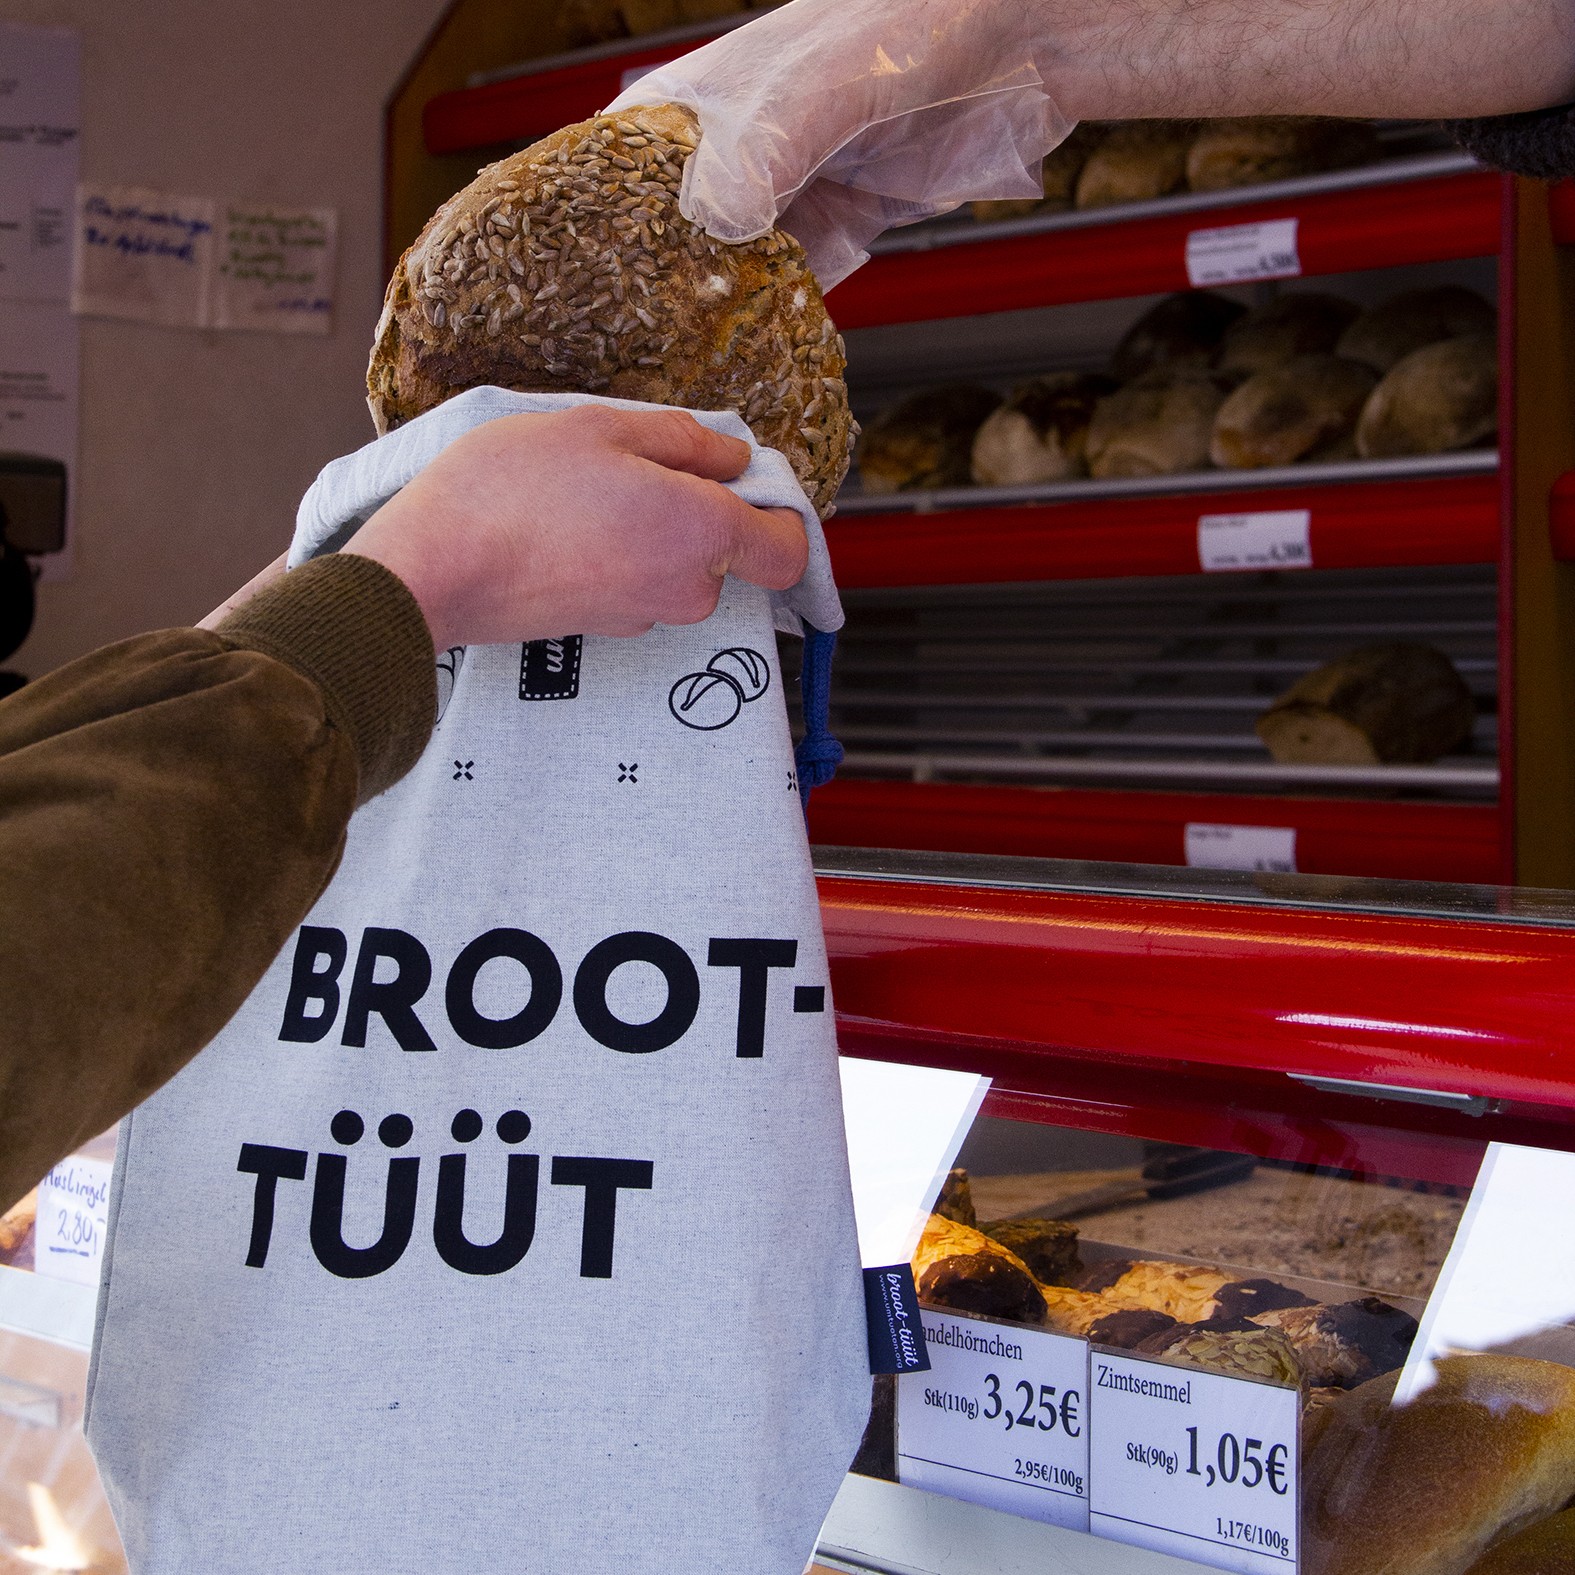 Broot-Tüüt